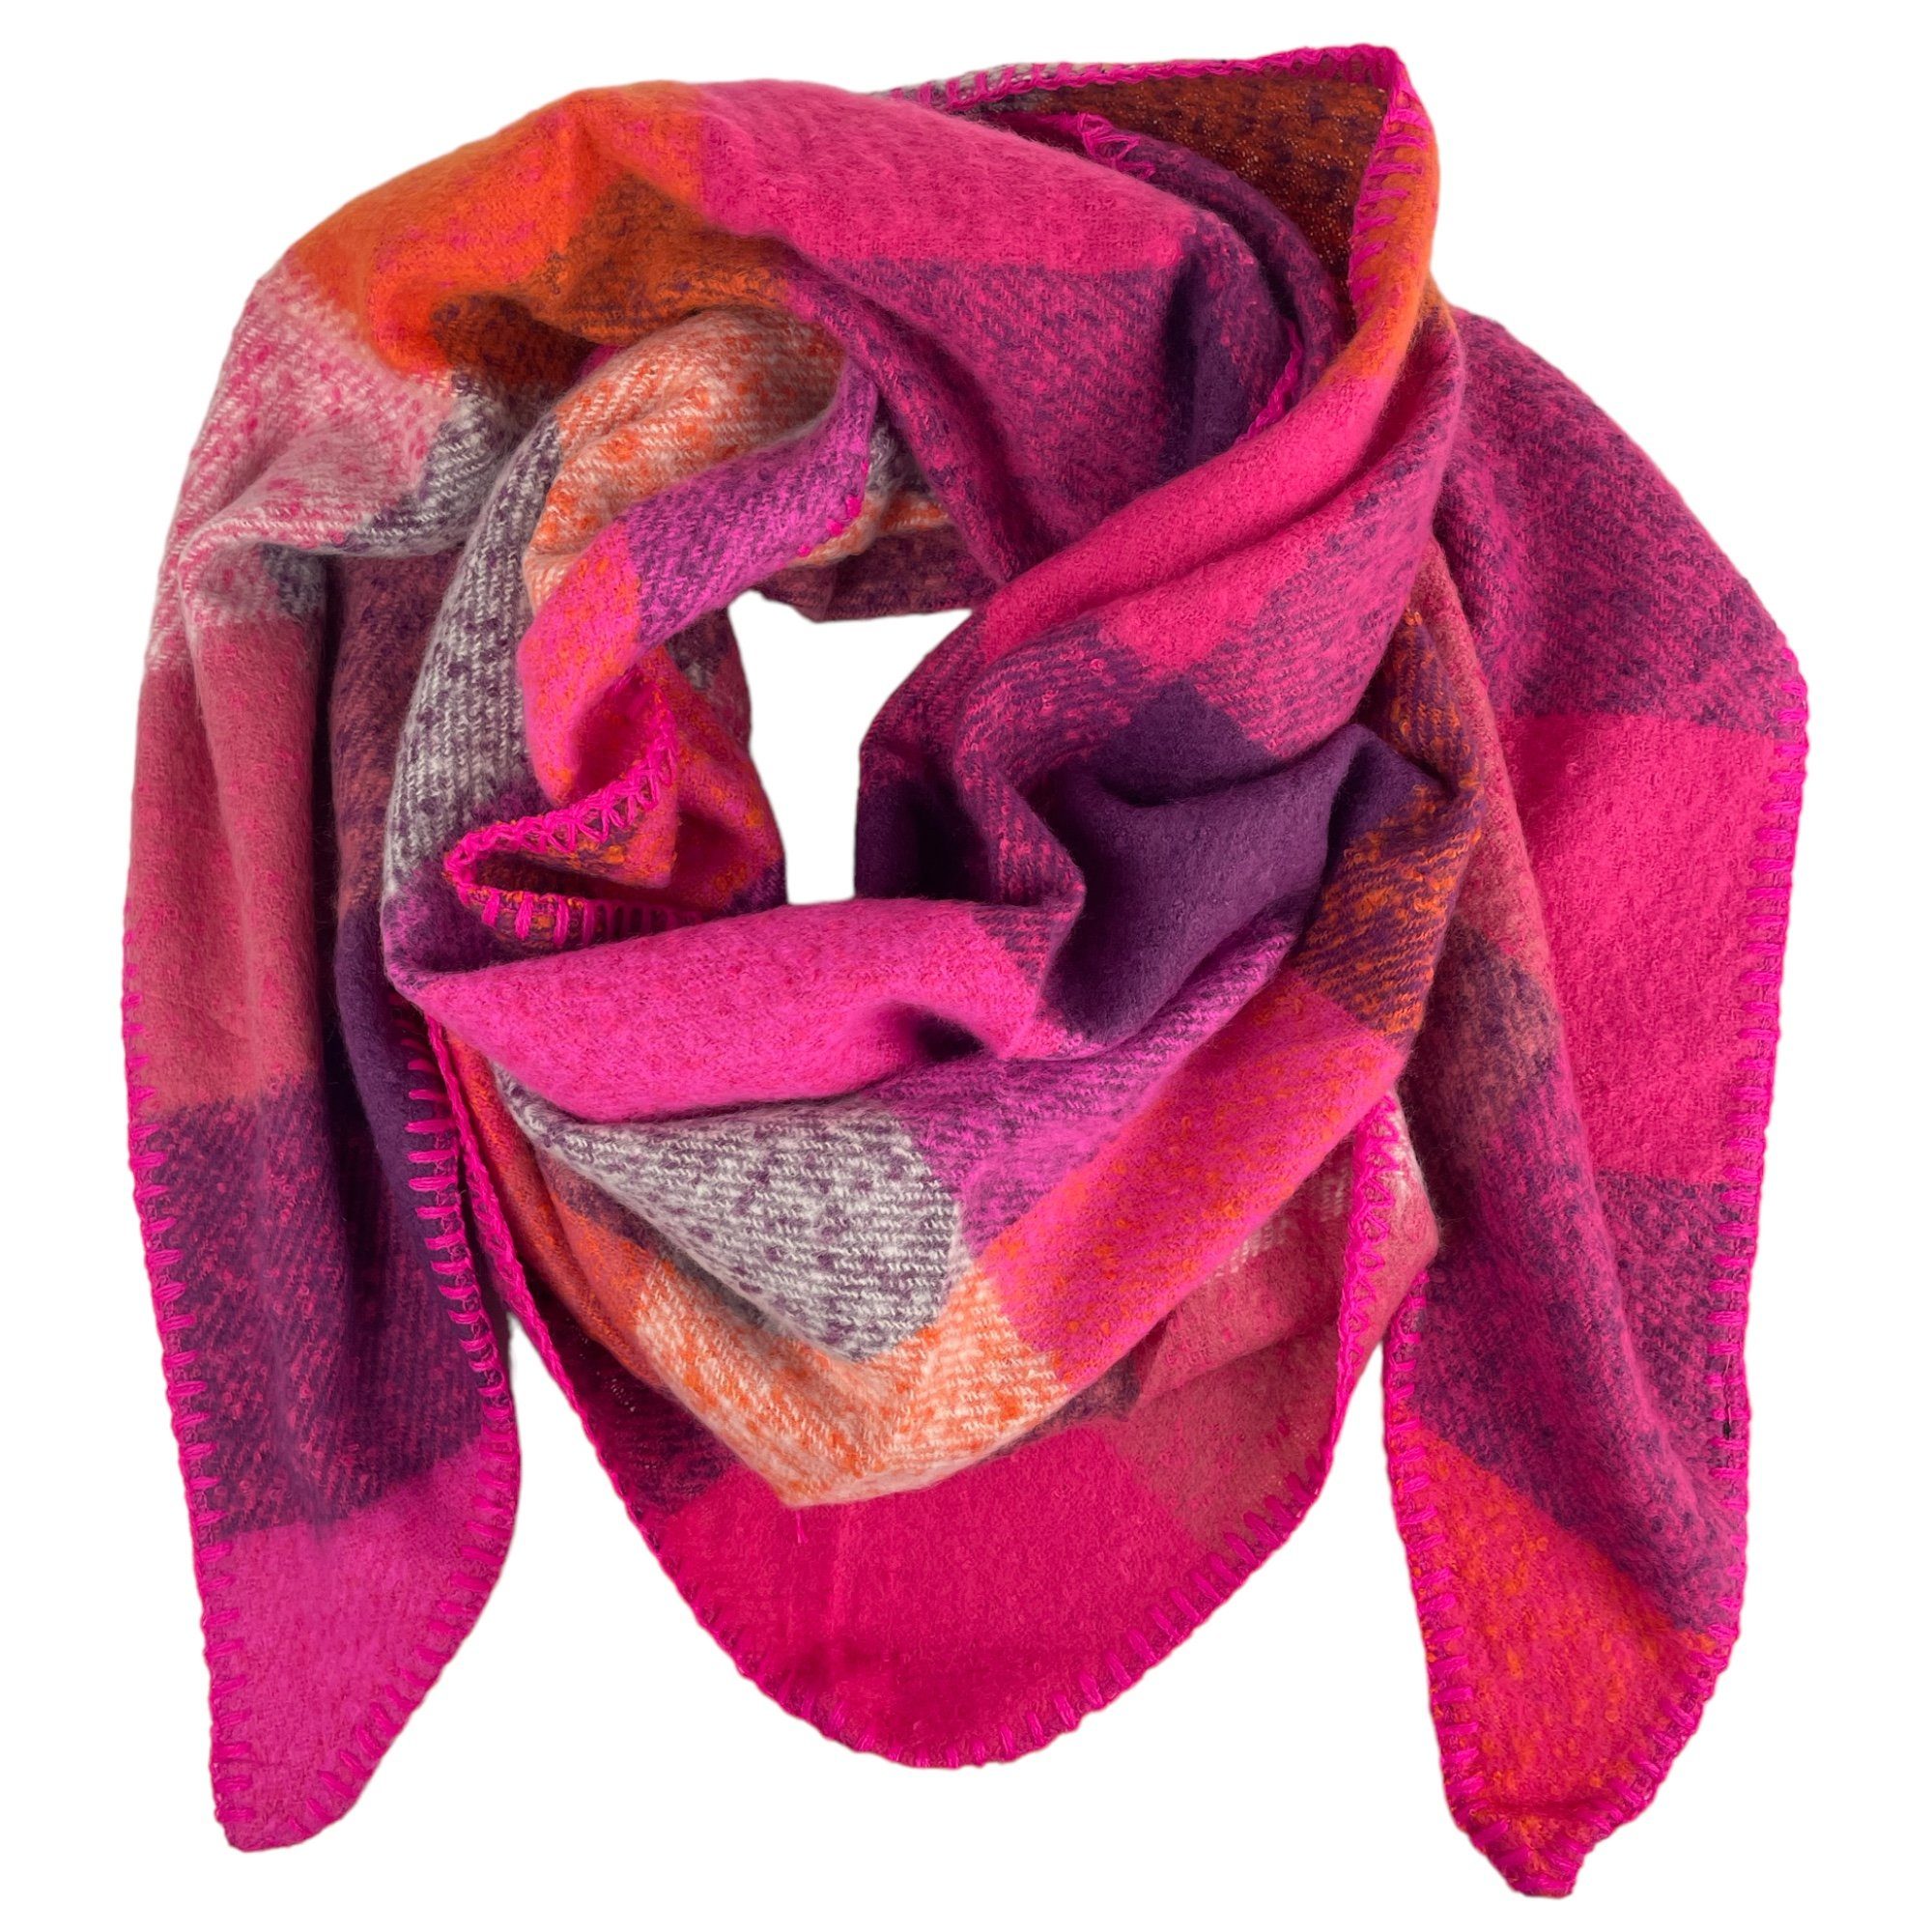 Taschen4life Schal großer Dreiecksschal kariert SW170, modische Tücher & Schals, kuschelweich pink | Modeschals